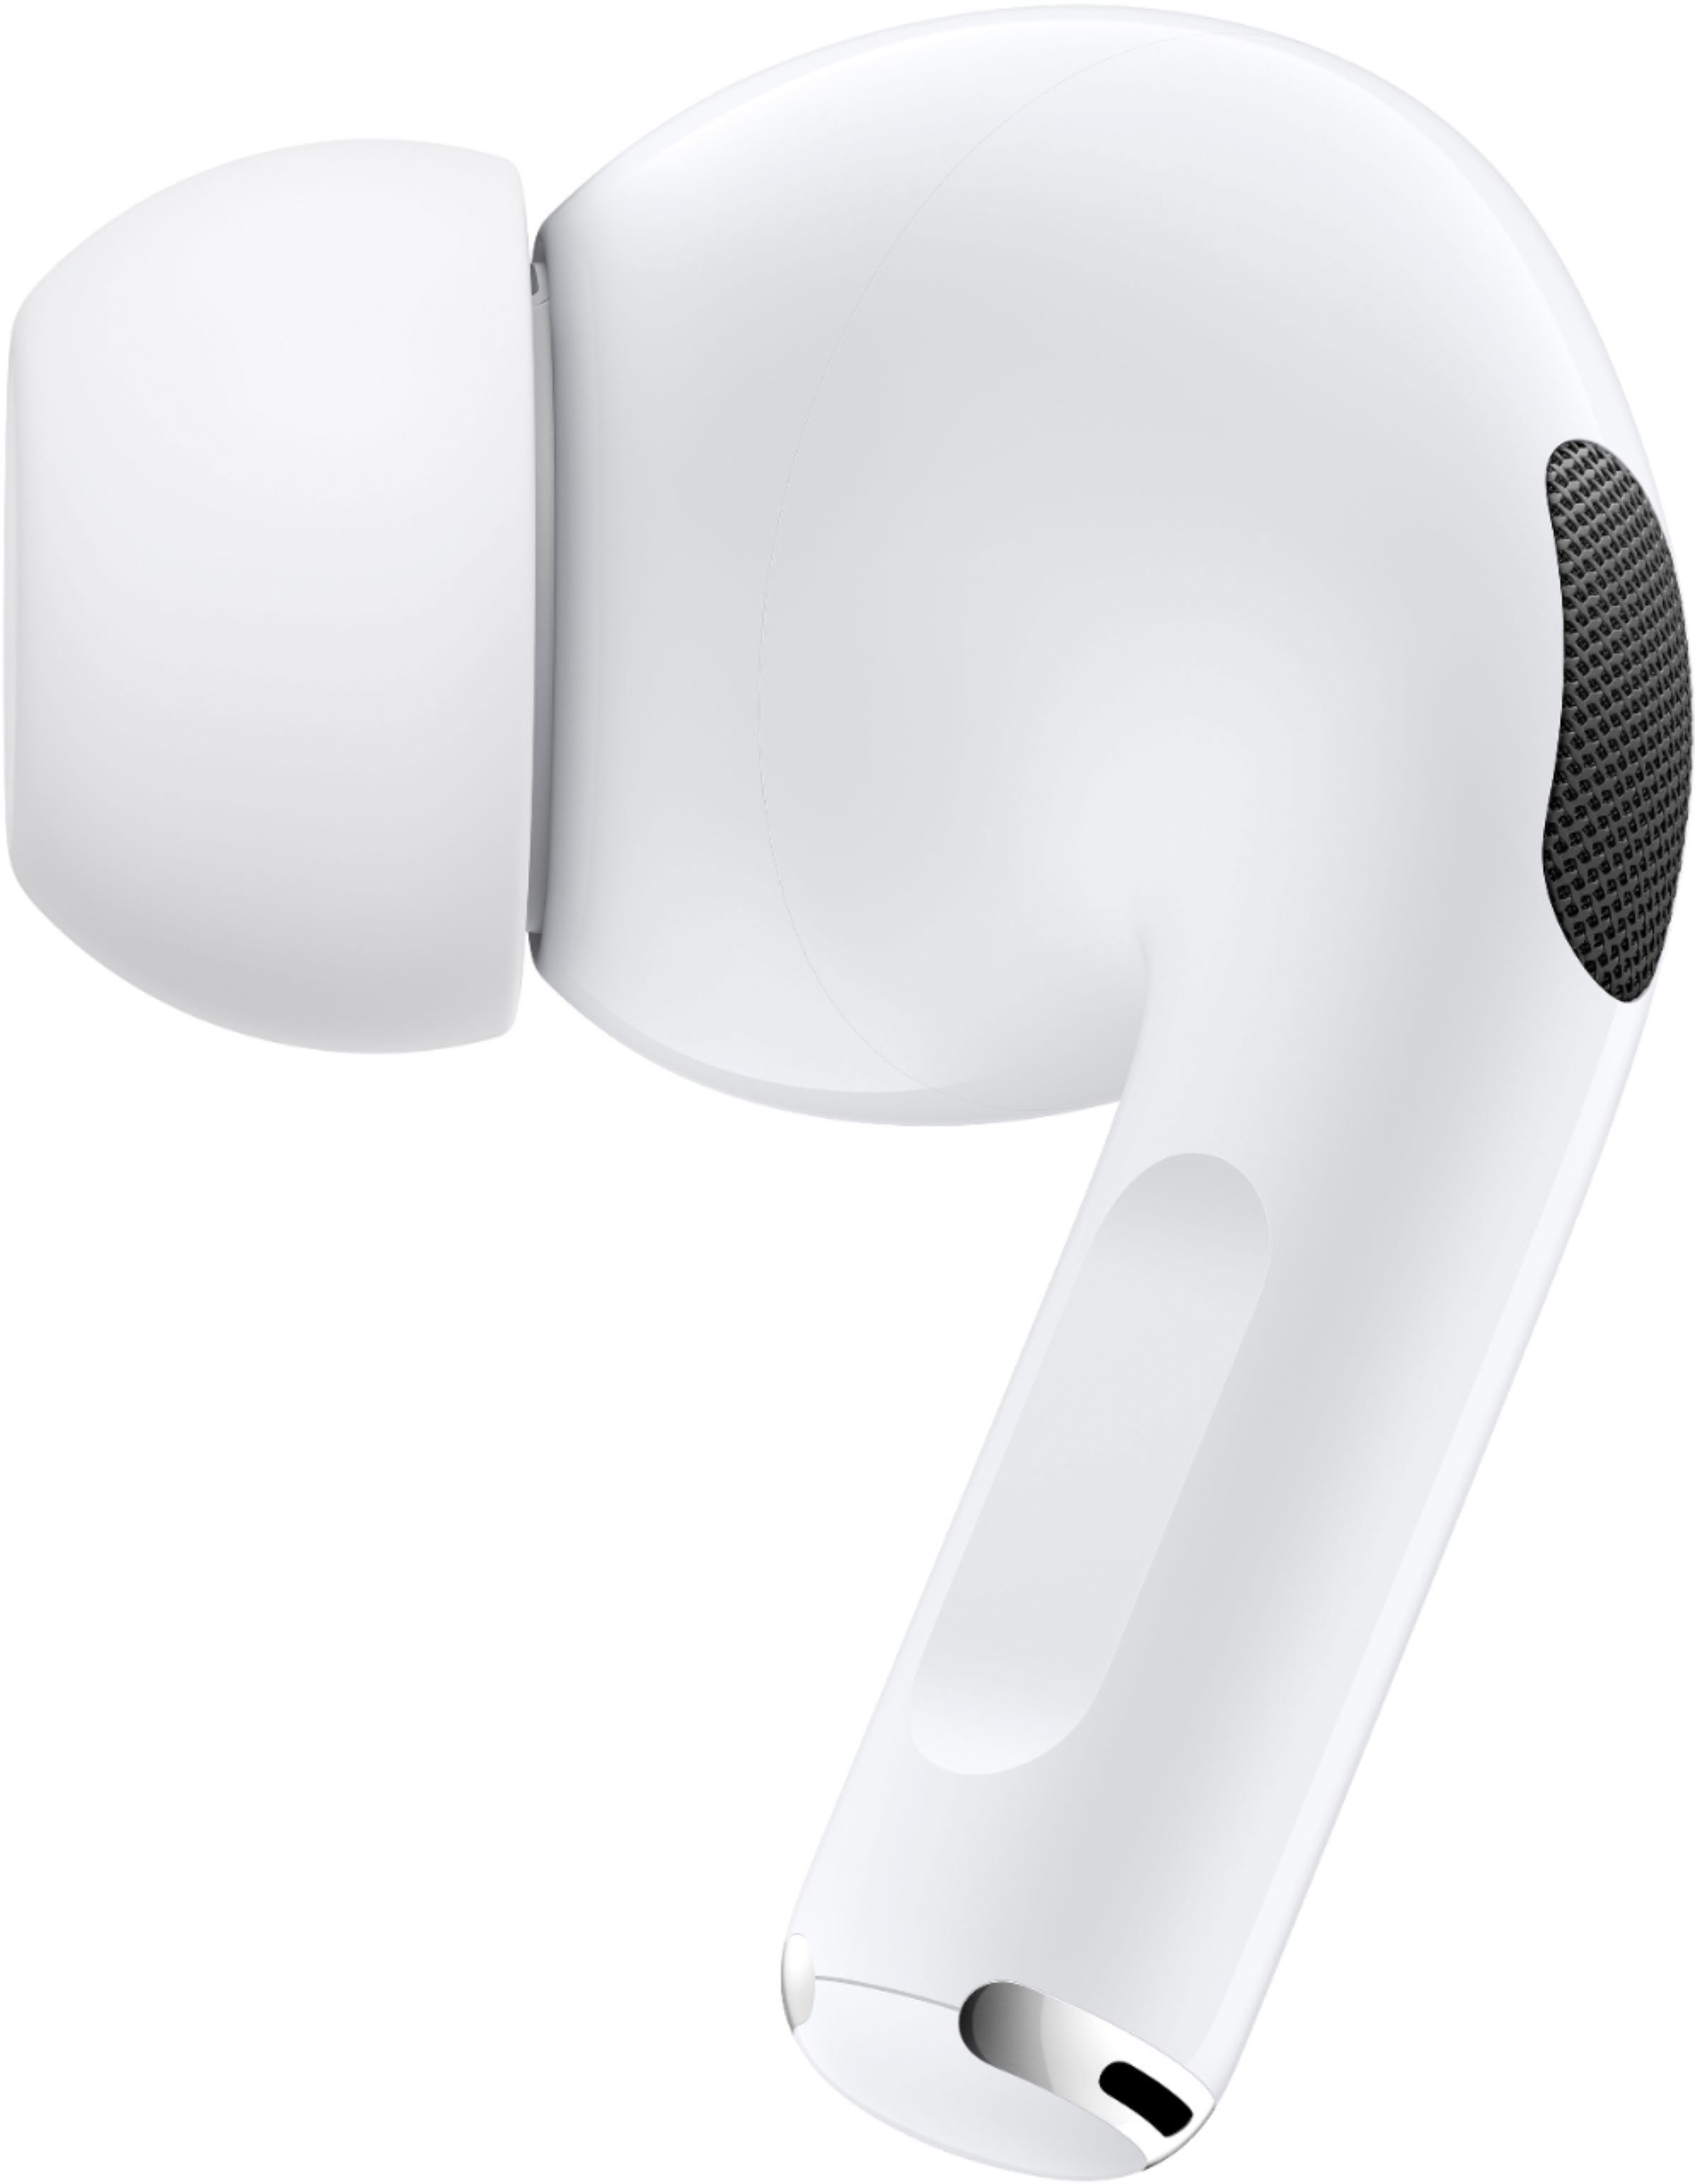 スマホアクセサリー イヤホンジャック Best Buy: Apple AirPods Pro White MWP22AM/A